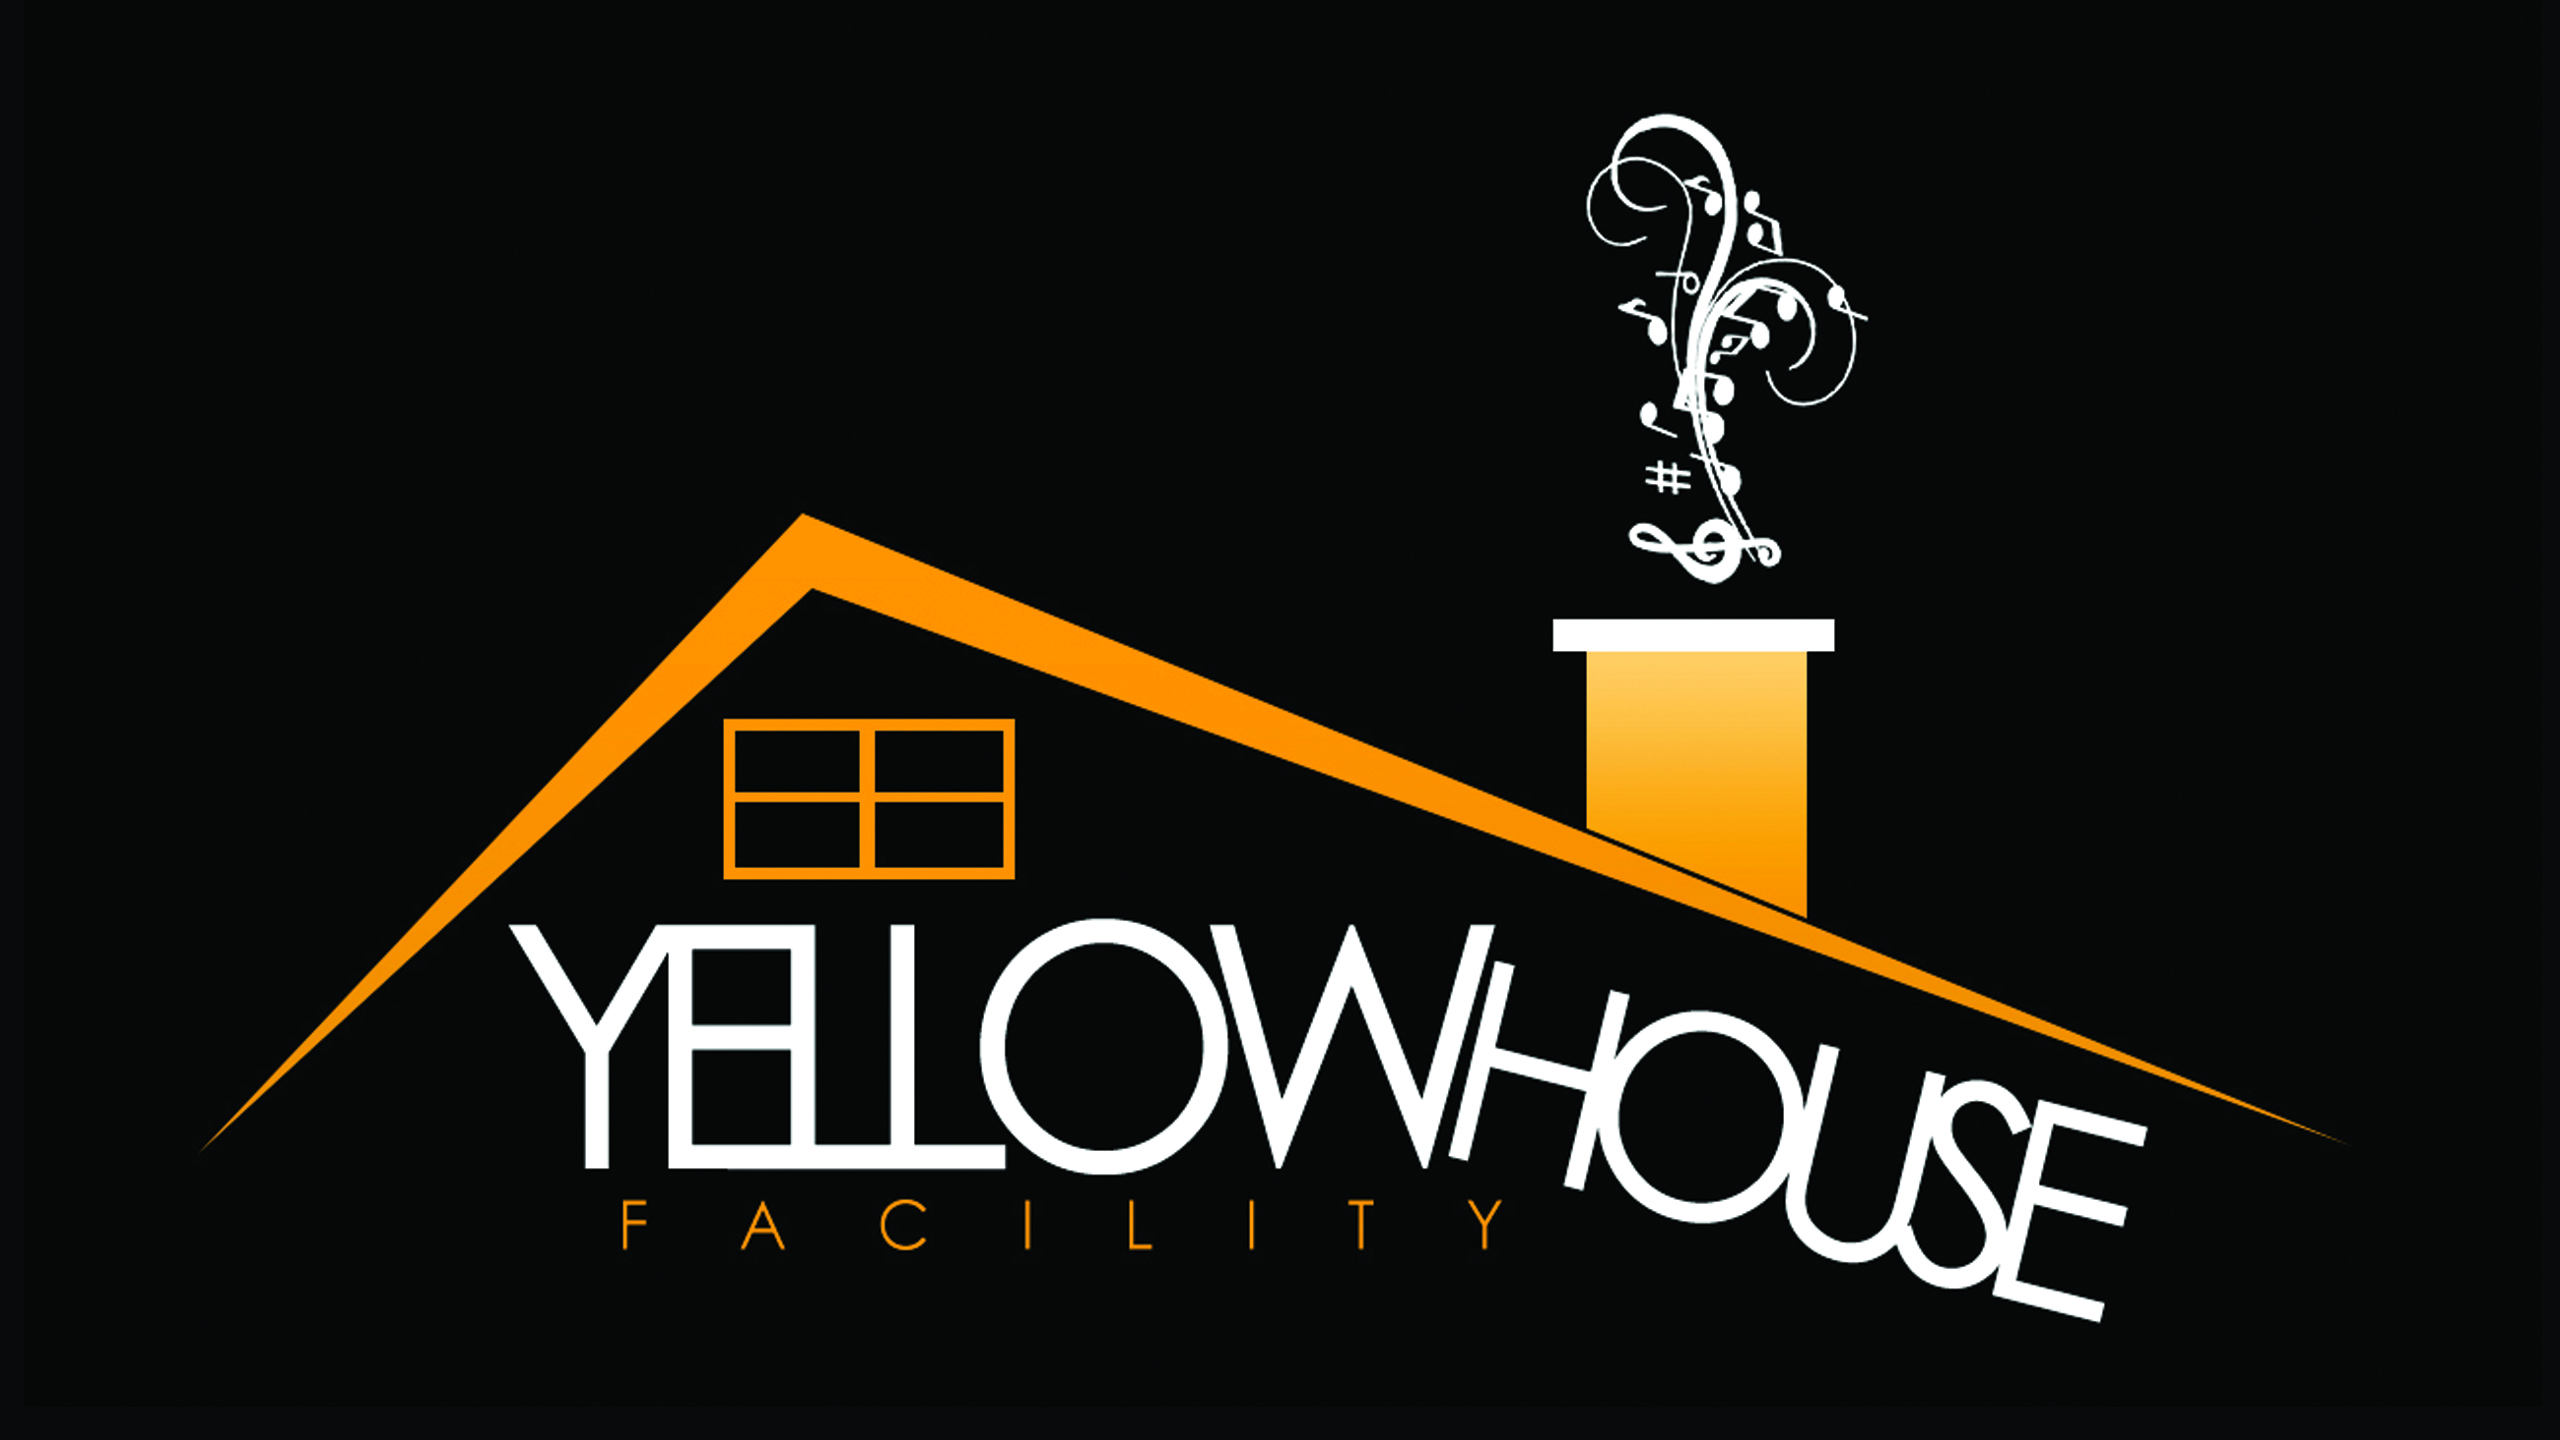 Yellowhouse Studio